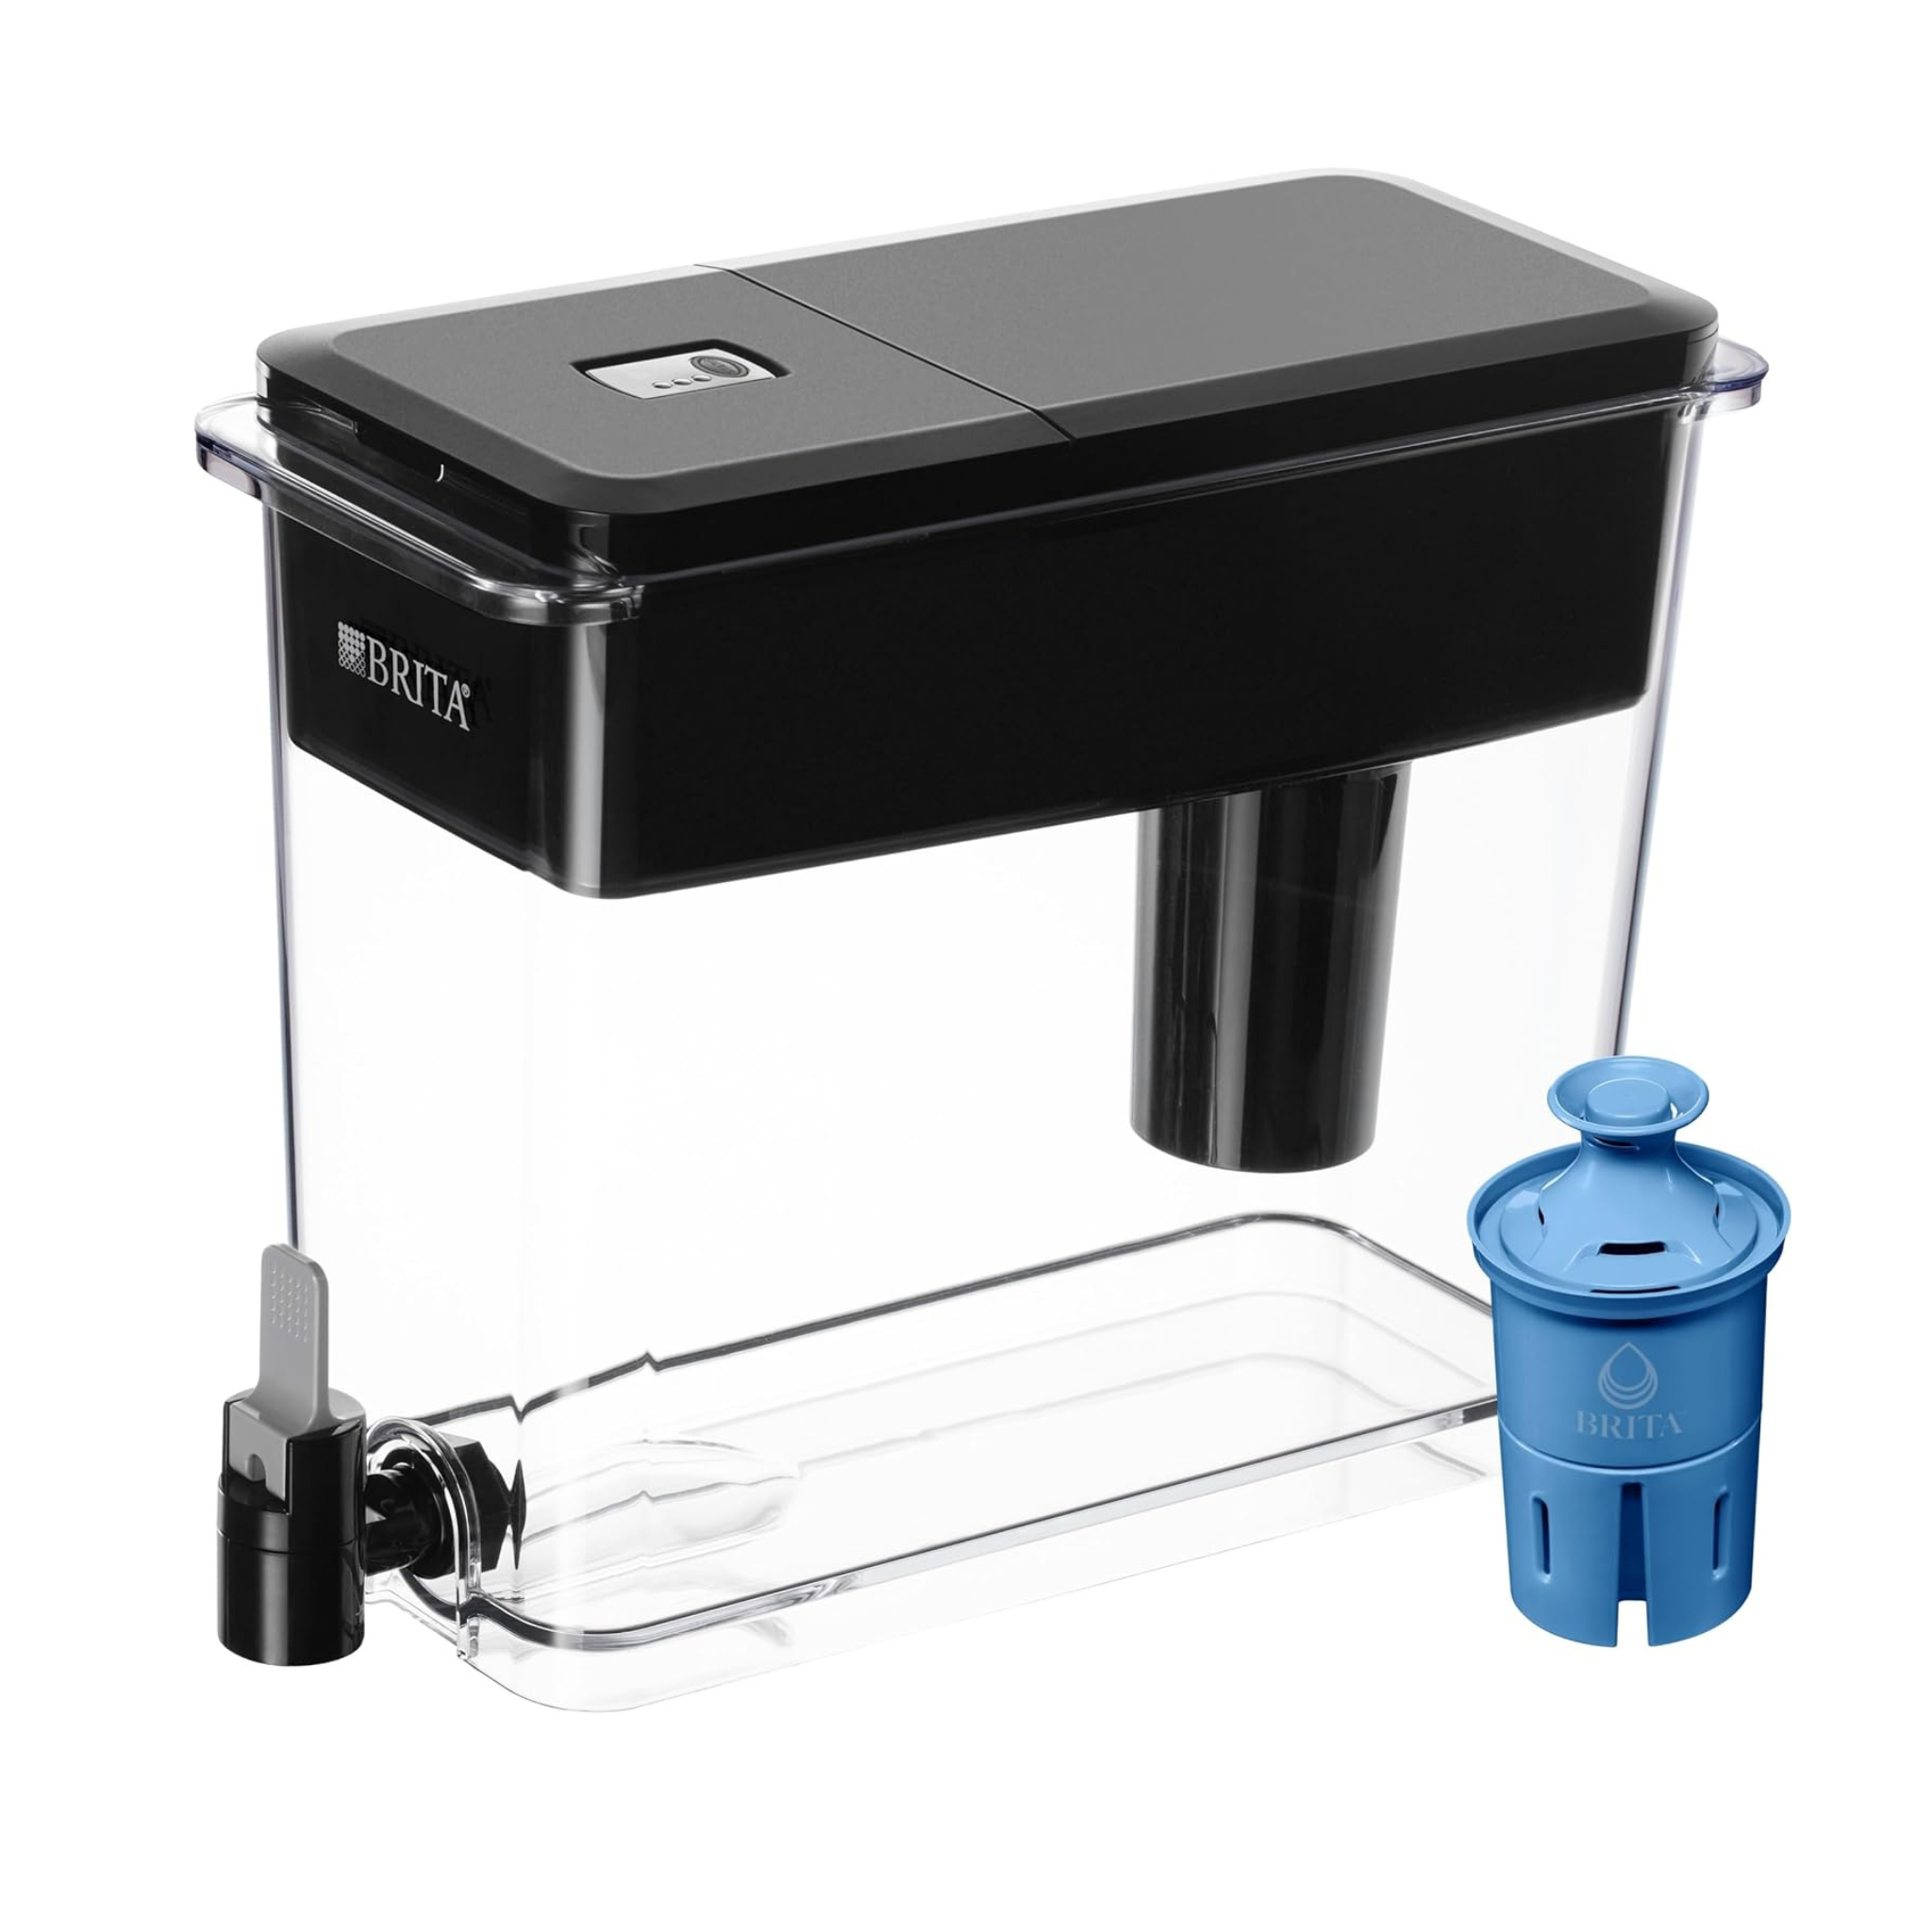 Brita UltraMax XL 27-Cup Water Filter Dispenser